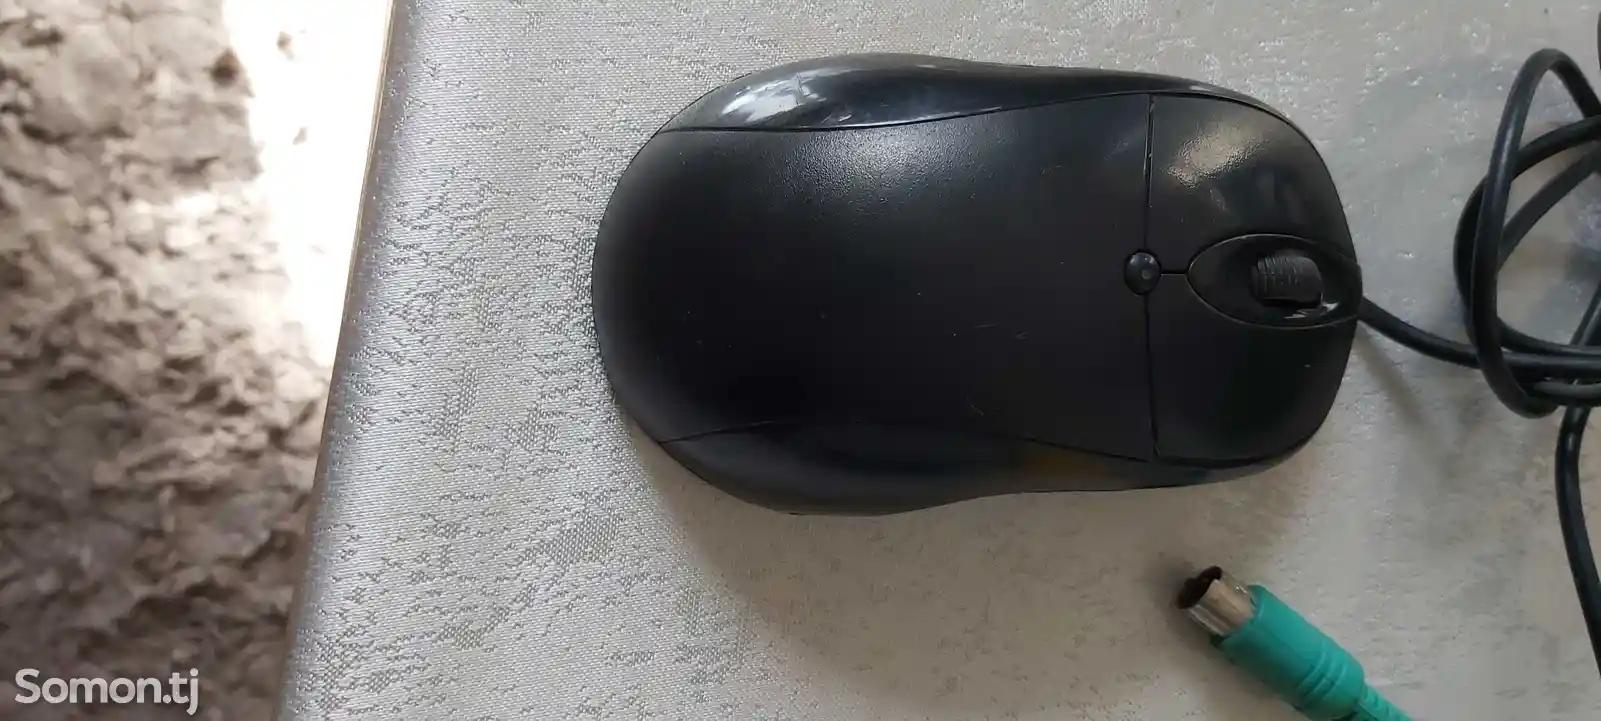 USB Мышь PS2-3